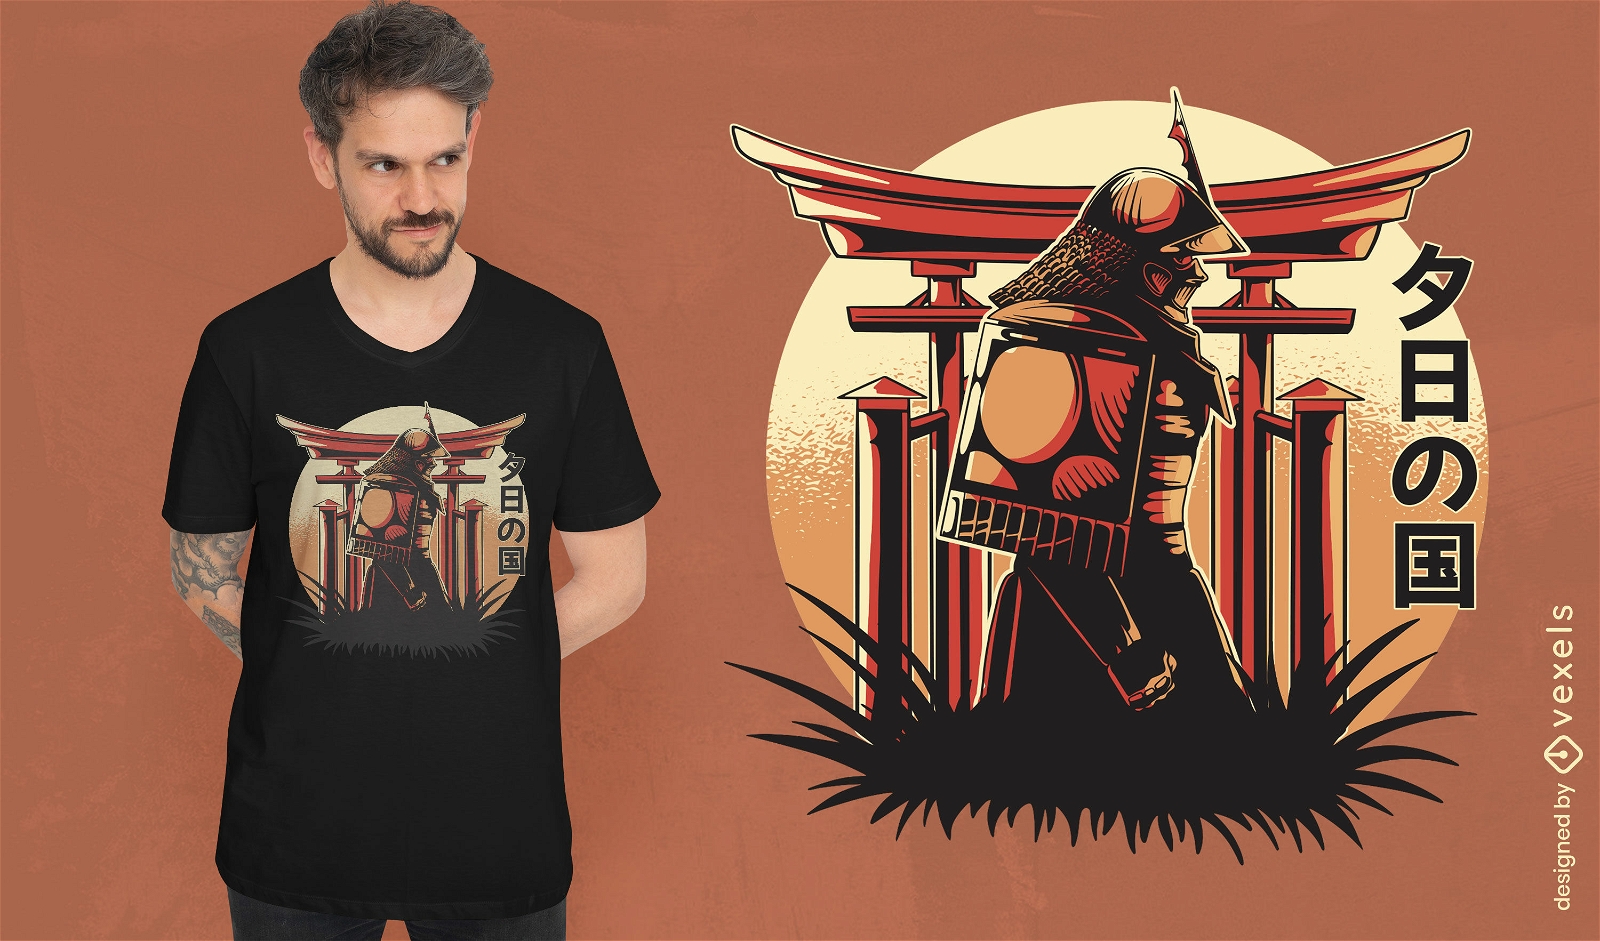 Samurai no design de camiseta do templo japonês